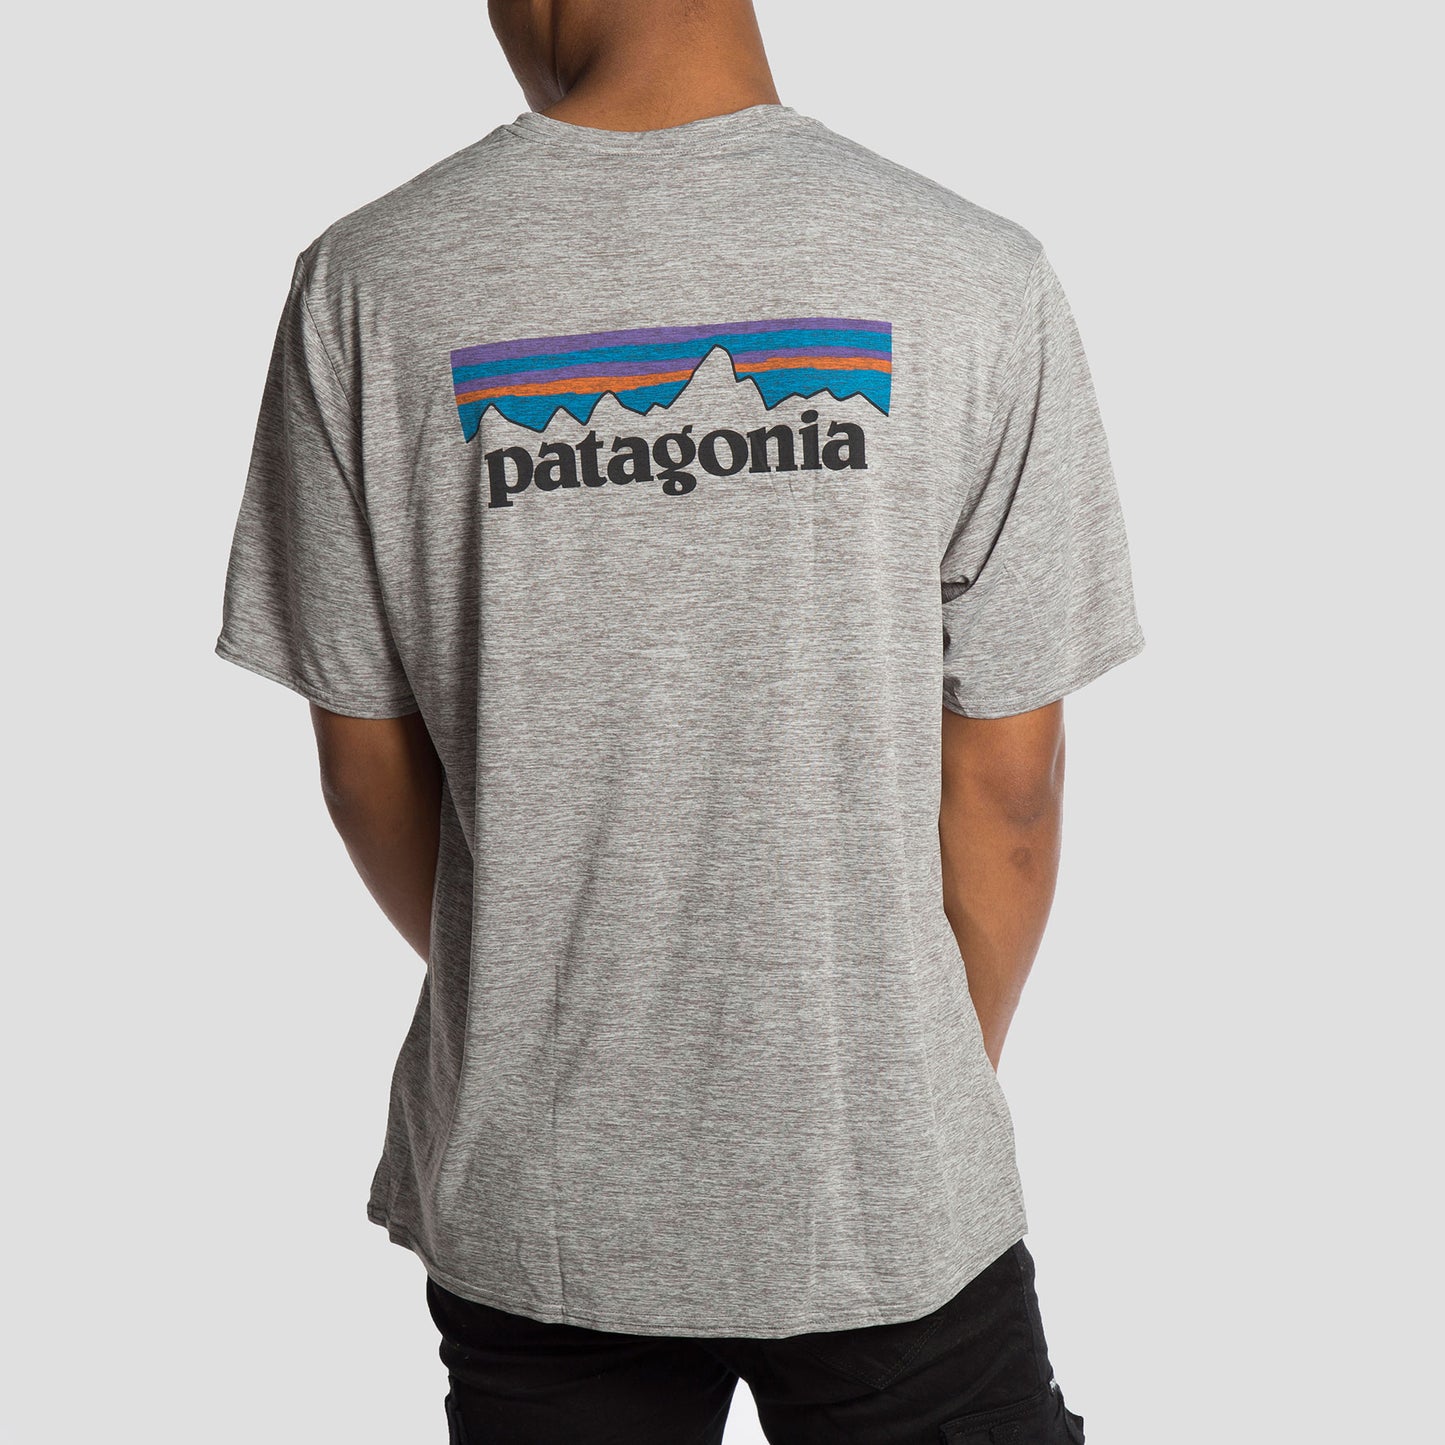 Patagonia Camiseta P-6 Logo - 45235PLFE - Colección Chico